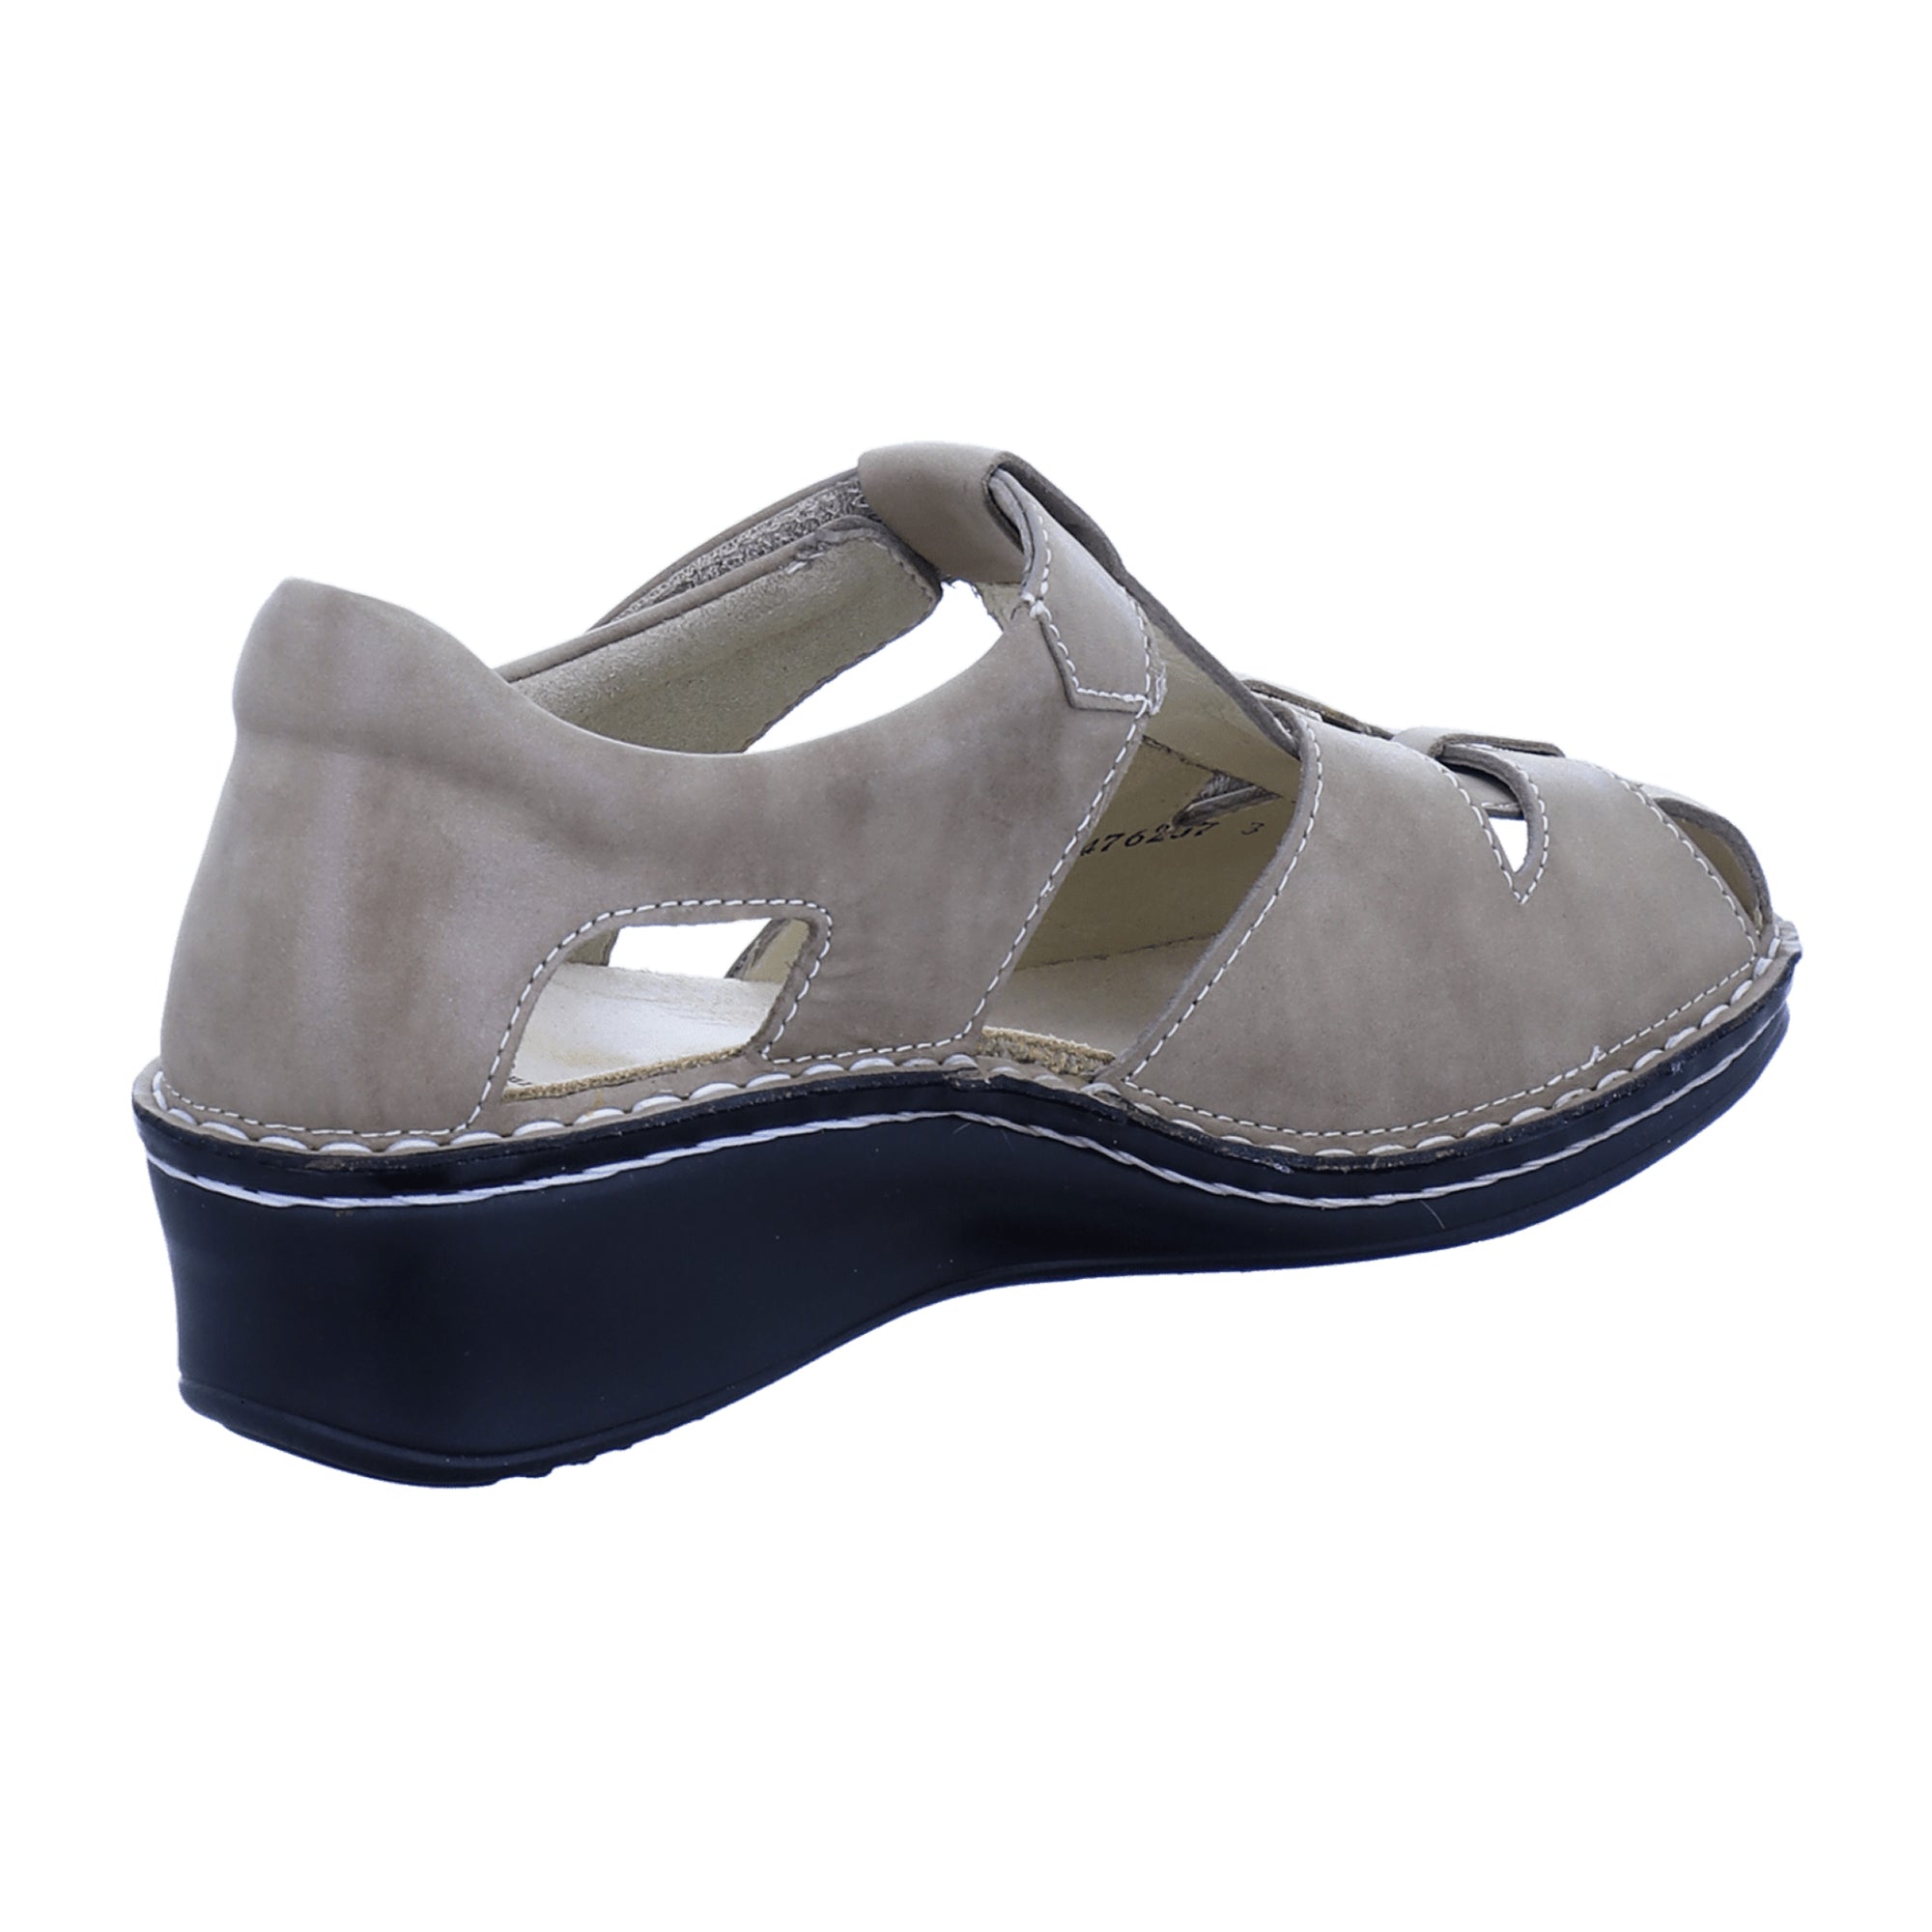 Finn Comfort Funen Women's Comfort Sandals - Stylish & Durable in Beige